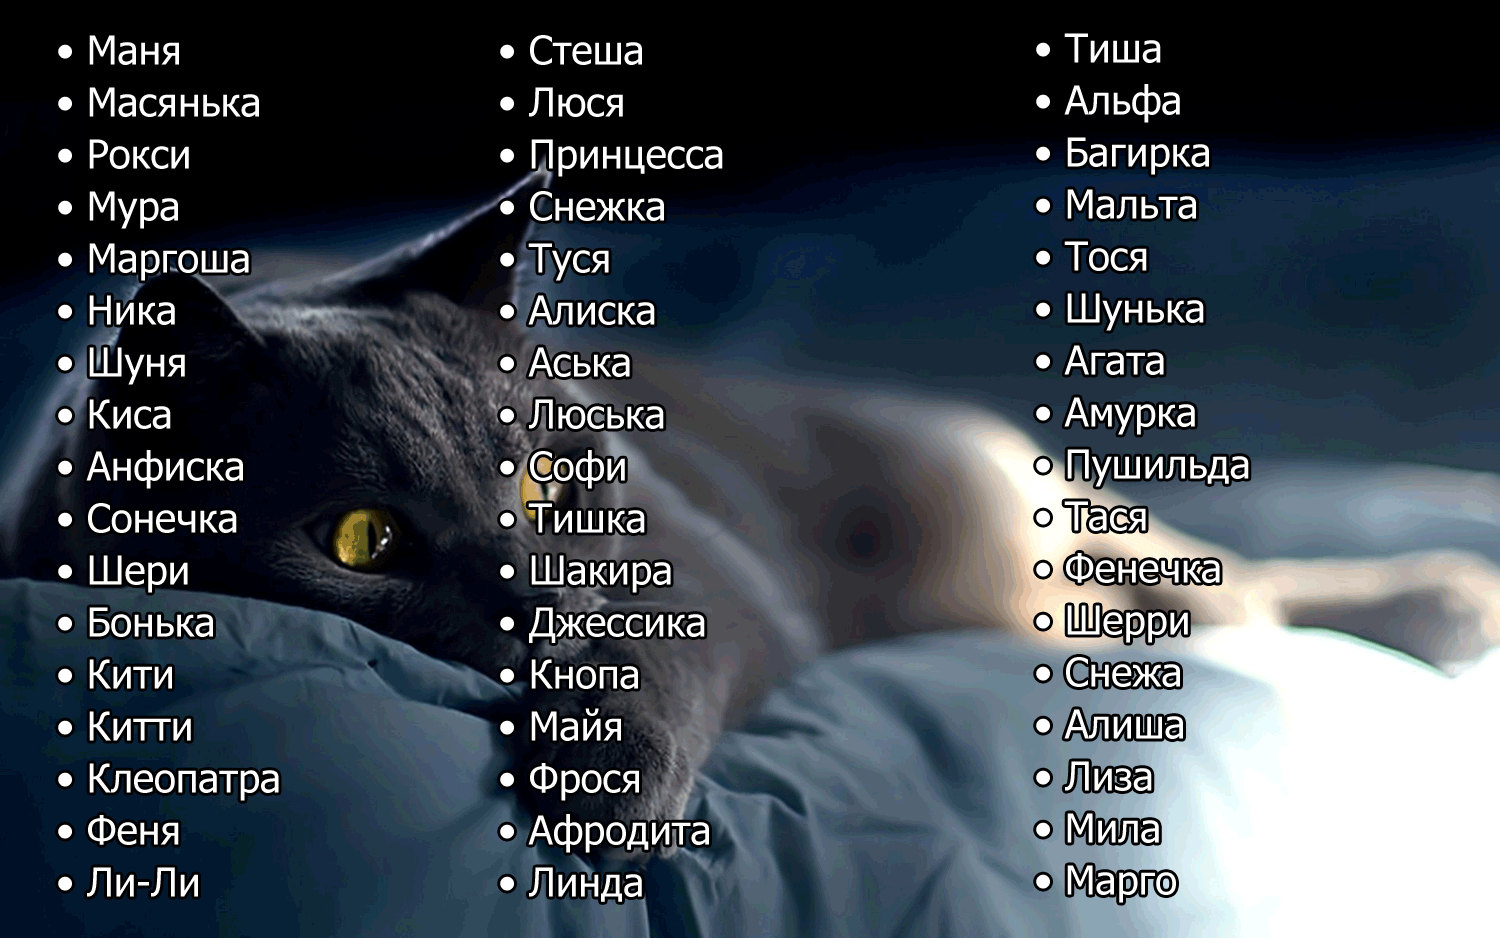 Красивые и редкие имена для кошек и котят девочек. список лучших имен русских, английских, японских, египетских для породистых и простых черных, серых, белых рыжих и трехцветных кошек девочек